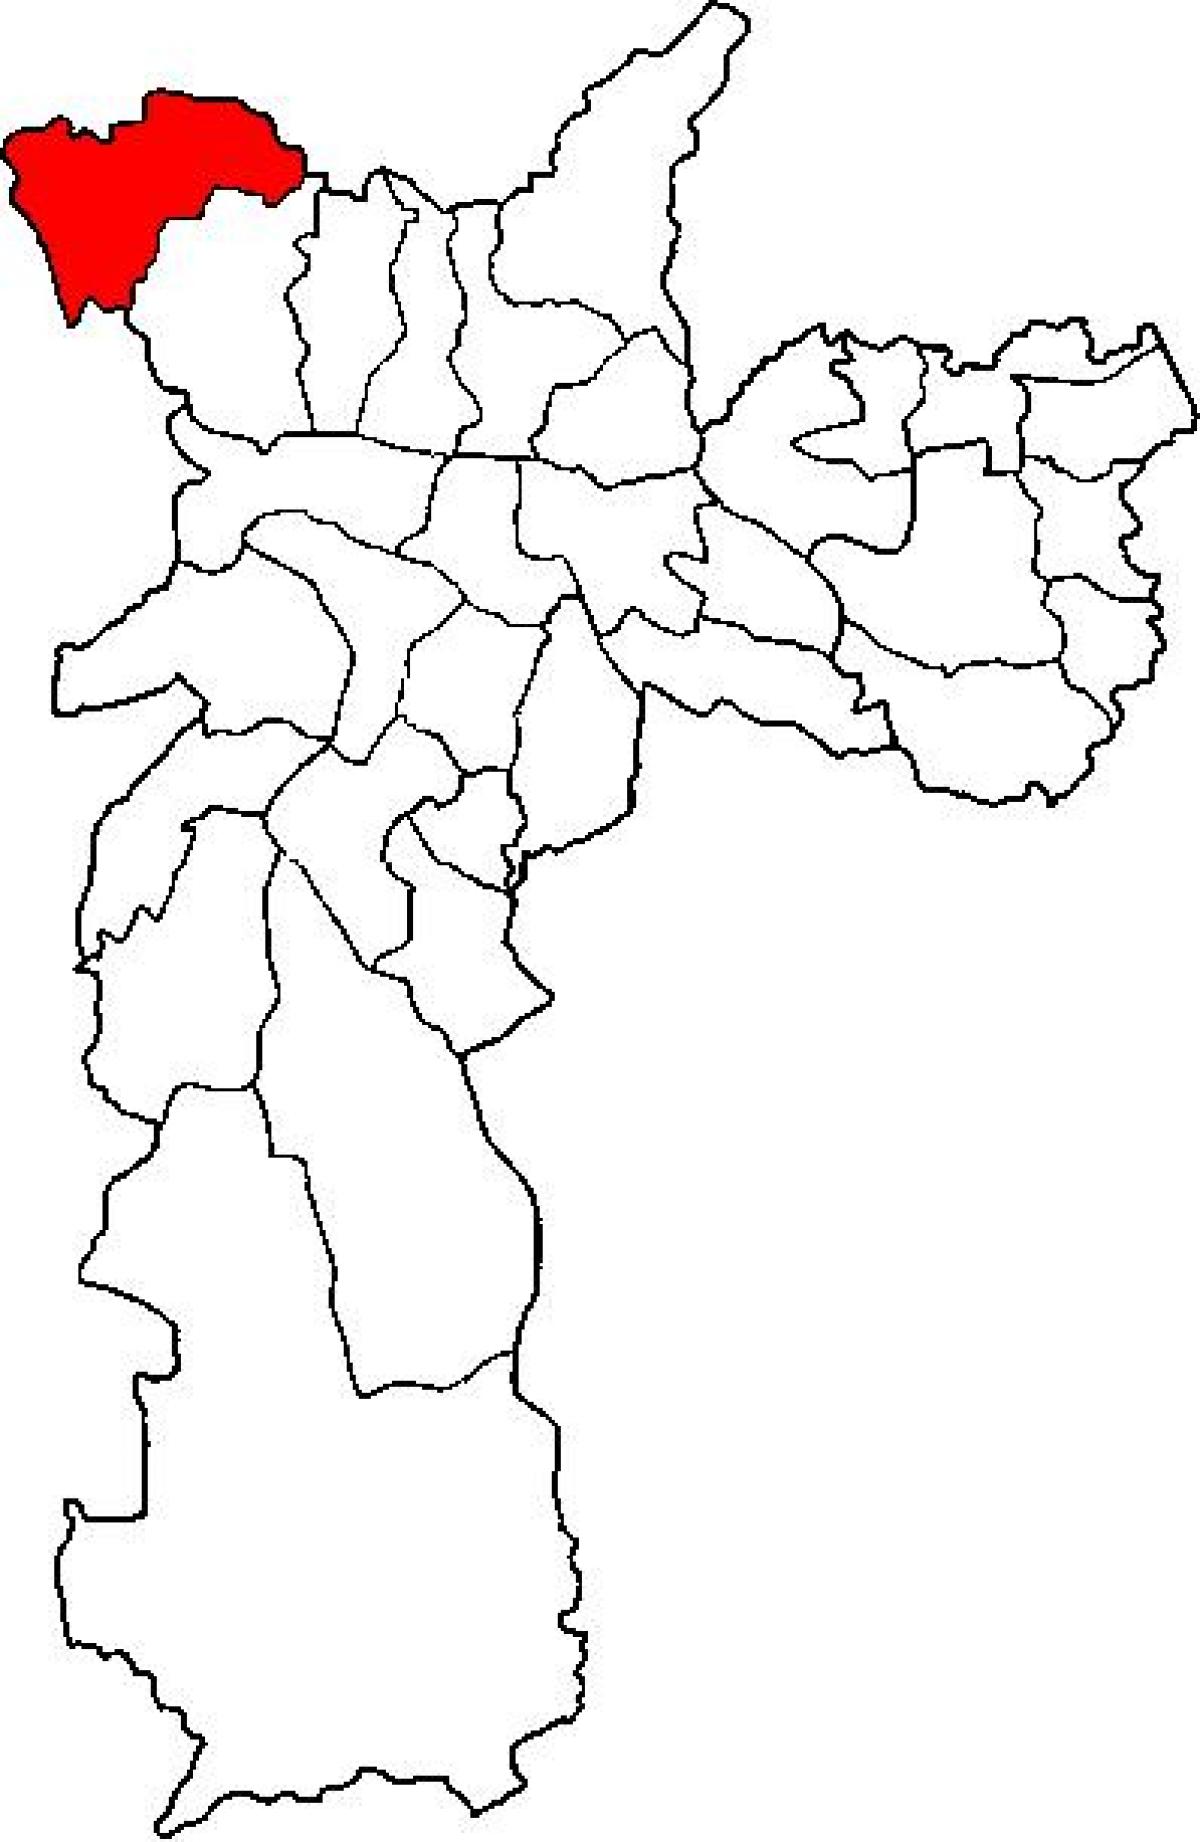 Mapa de Perus sub-concello de São Paulo